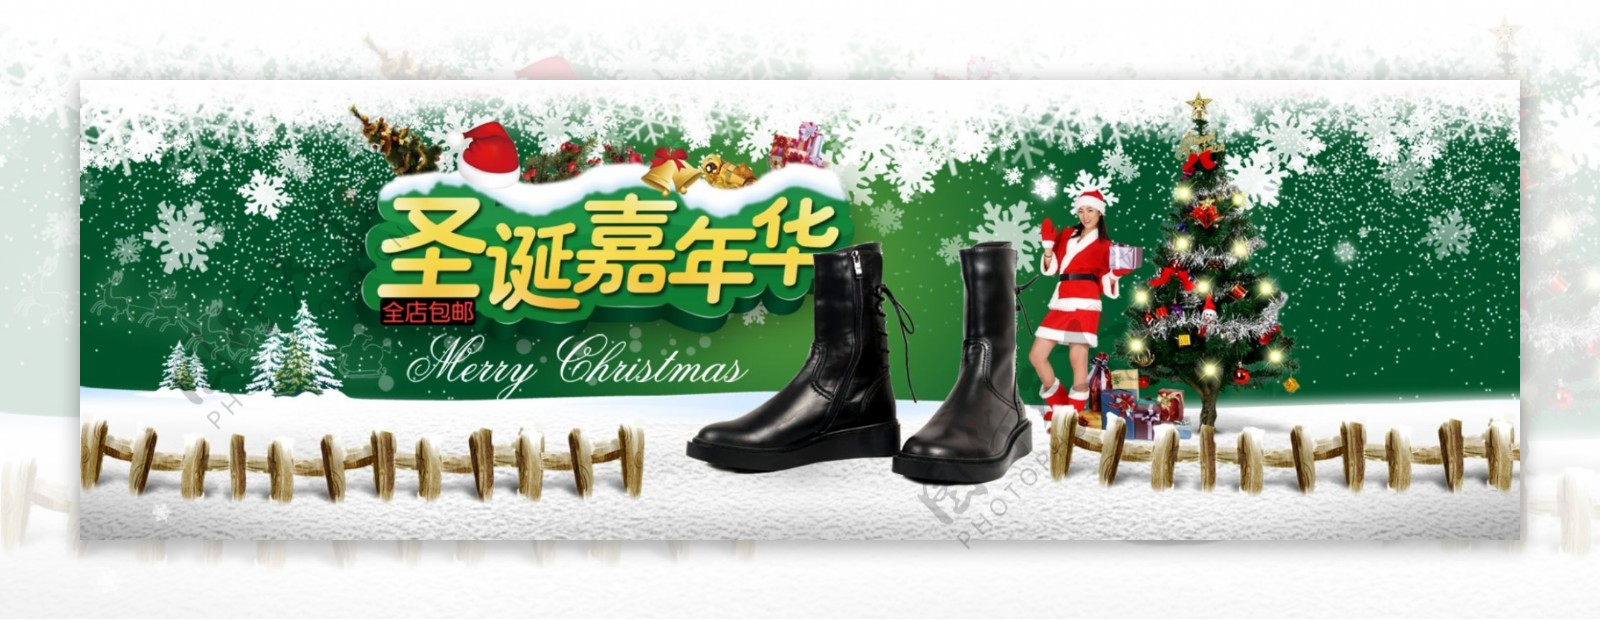 淘宝圣诞女鞋活动海报